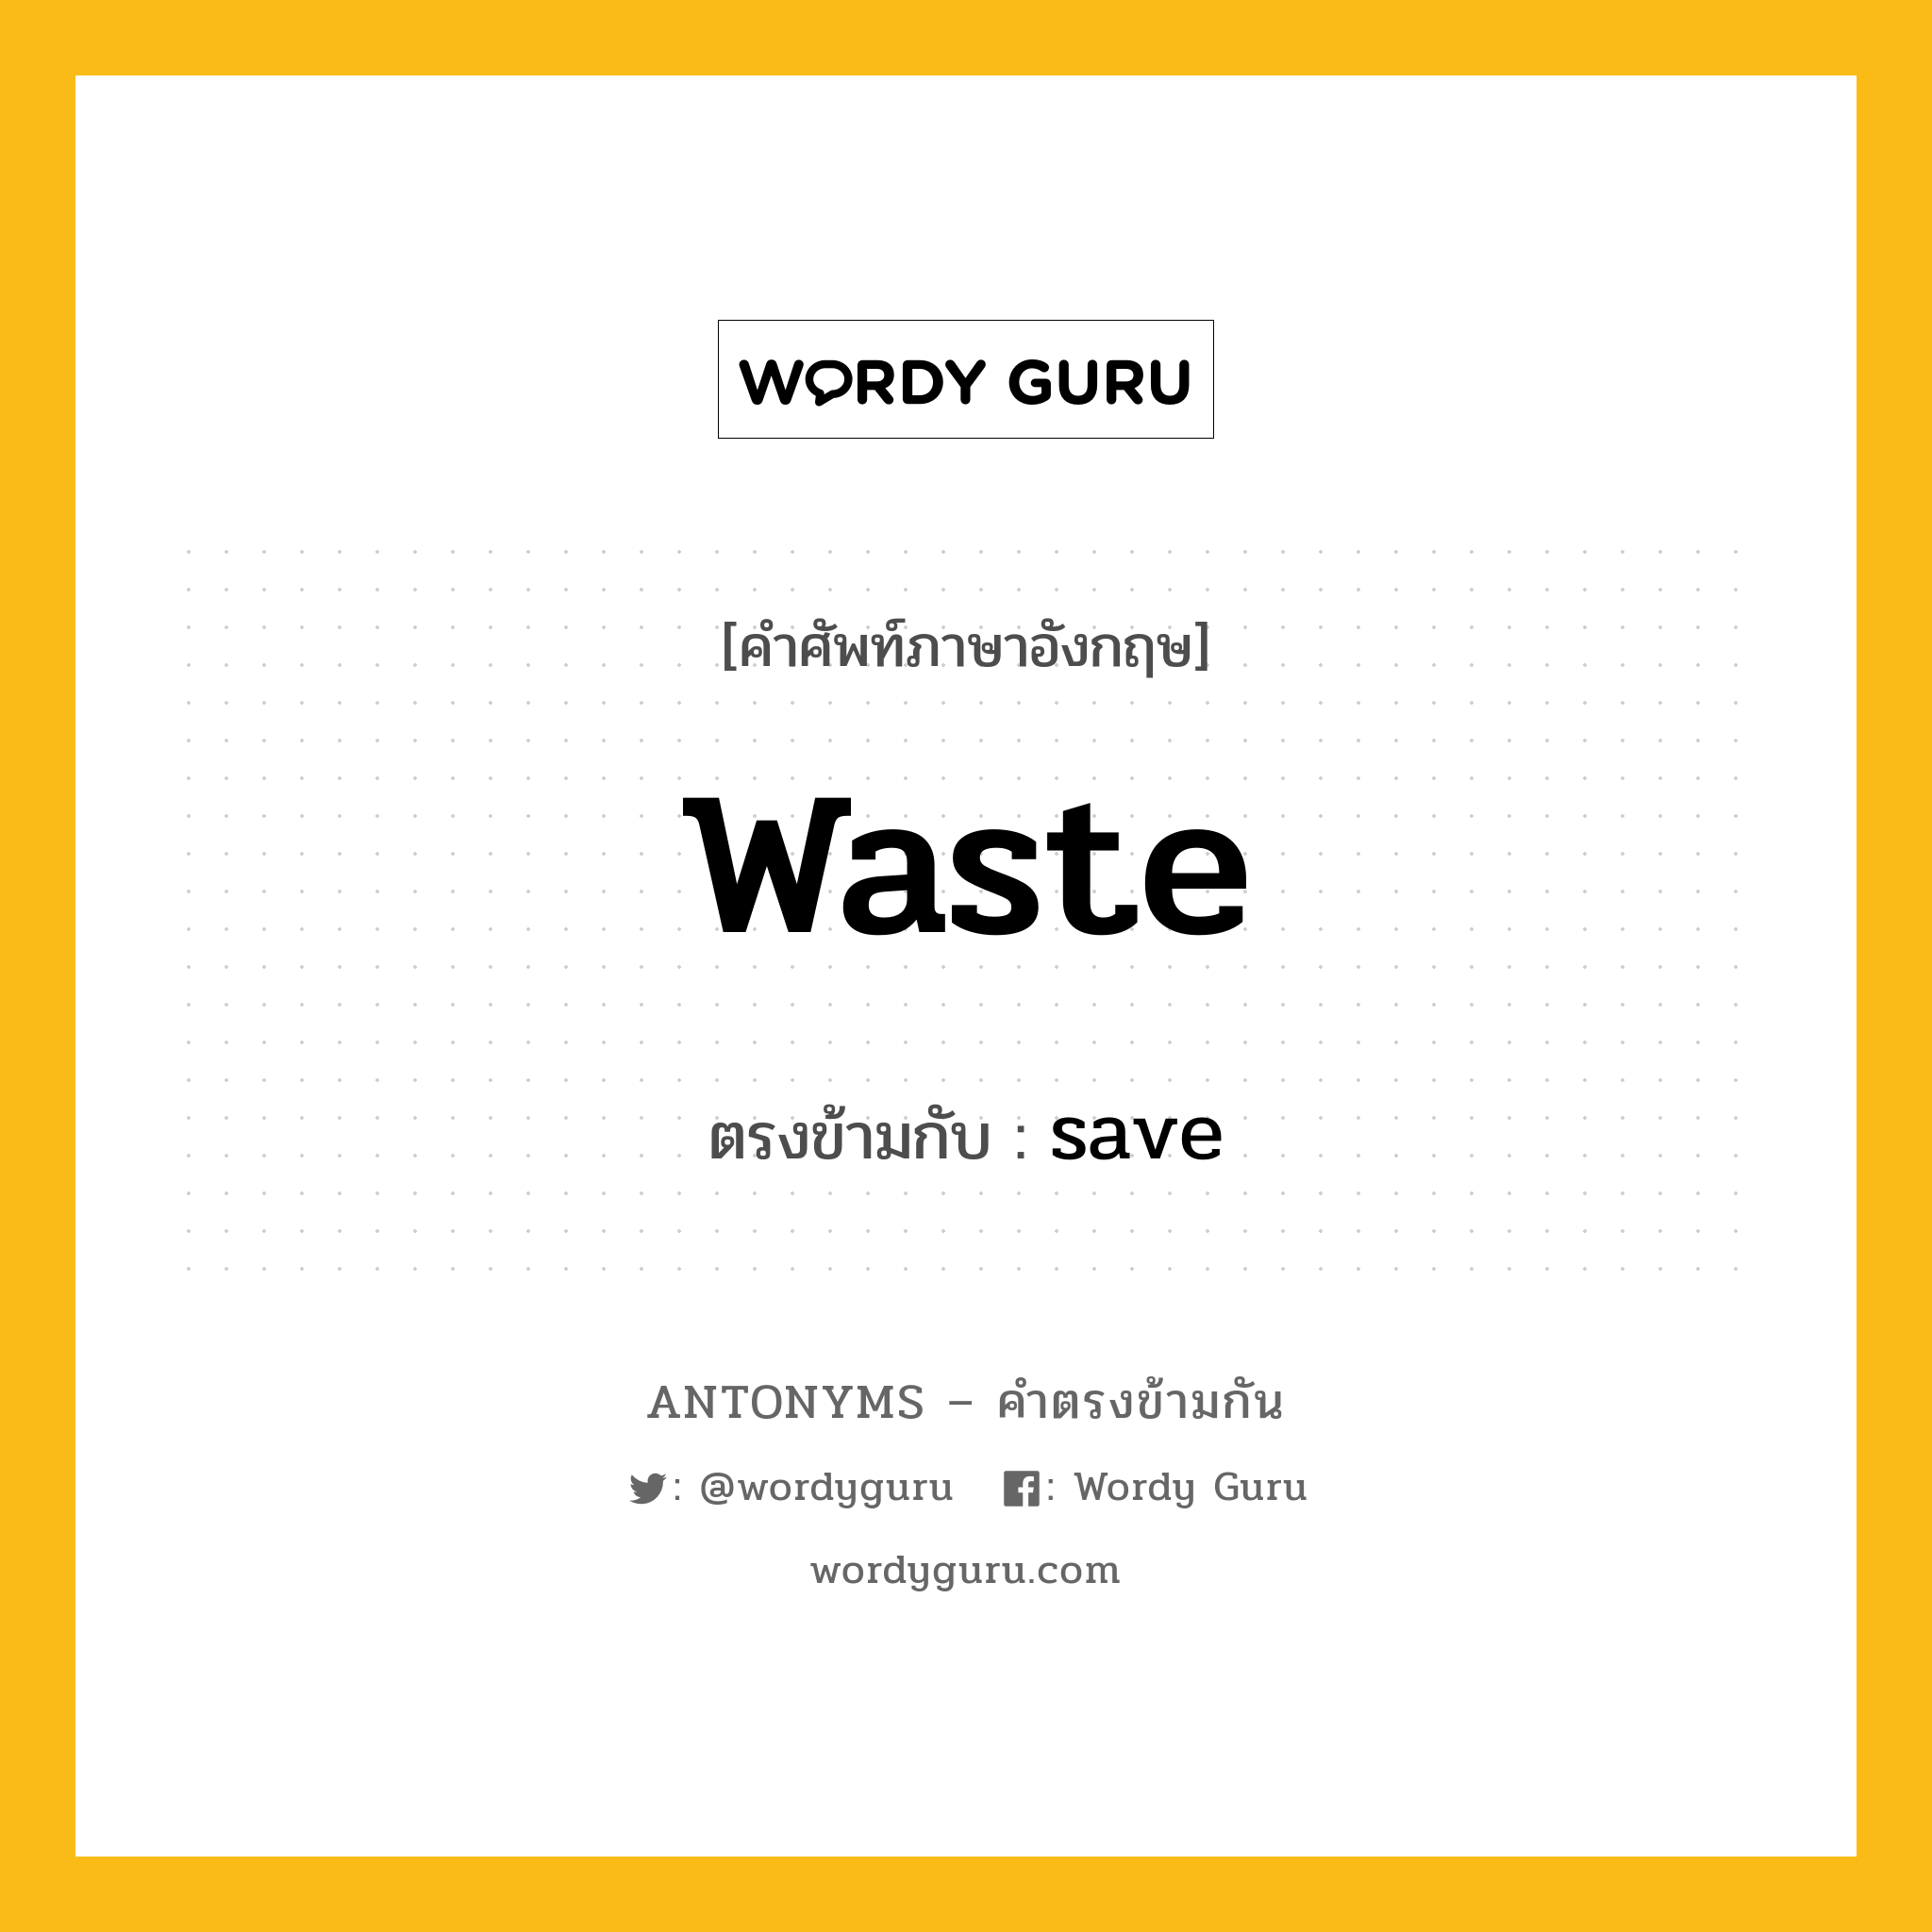 waste เป็นคำตรงข้ามกับคำไหนบ้าง?, คำศัพท์ภาษาอังกฤษ waste ตรงข้ามกับ save หมวด save